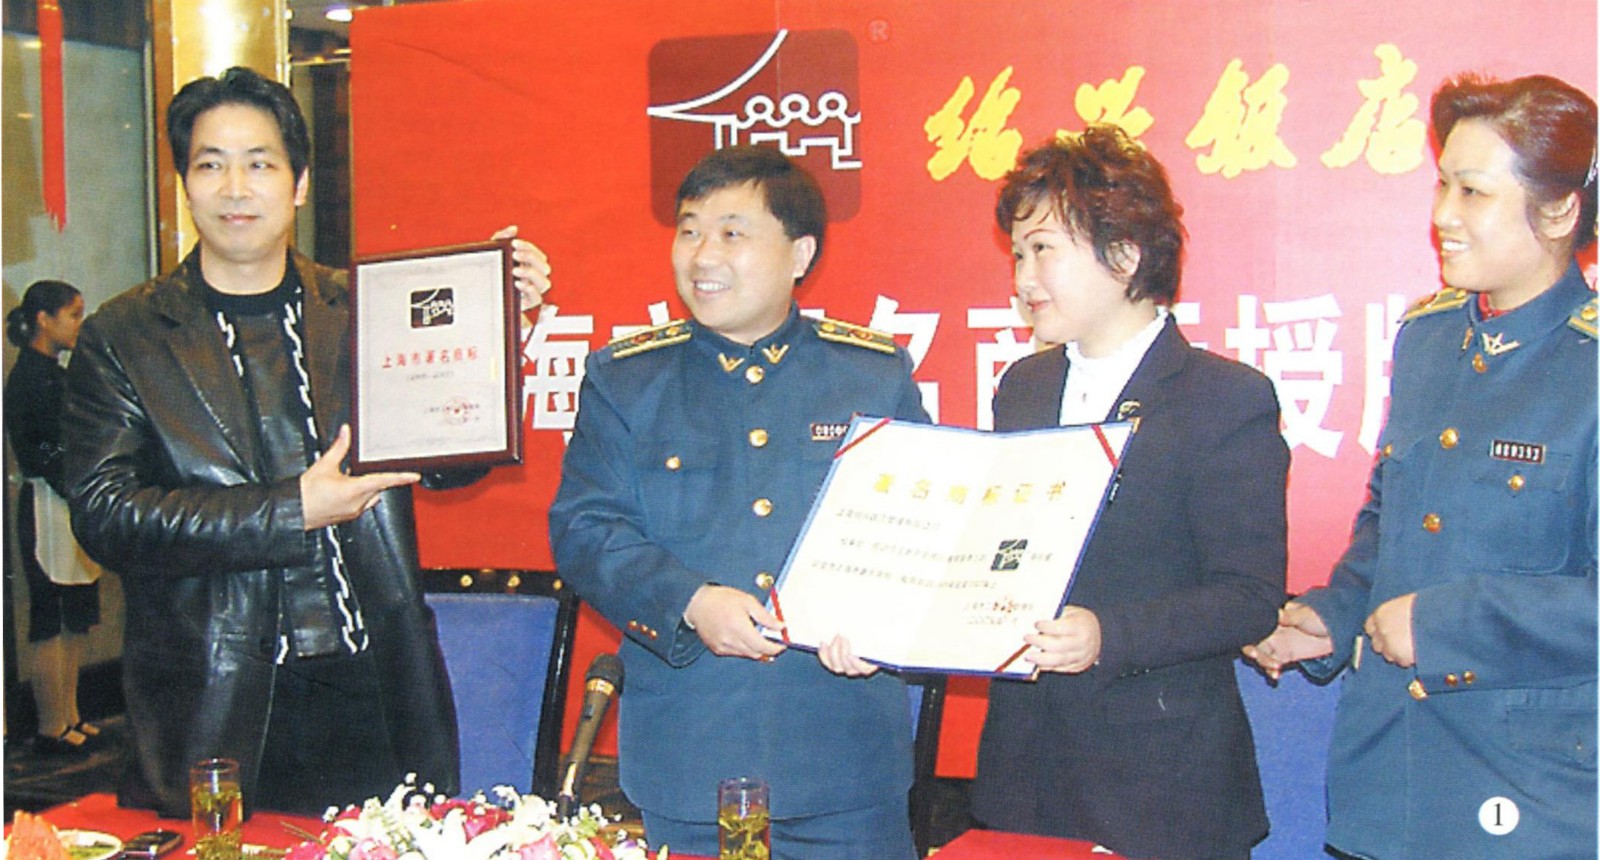 7-2005年绍兴饭店荣获“上海著名商标”.jpg